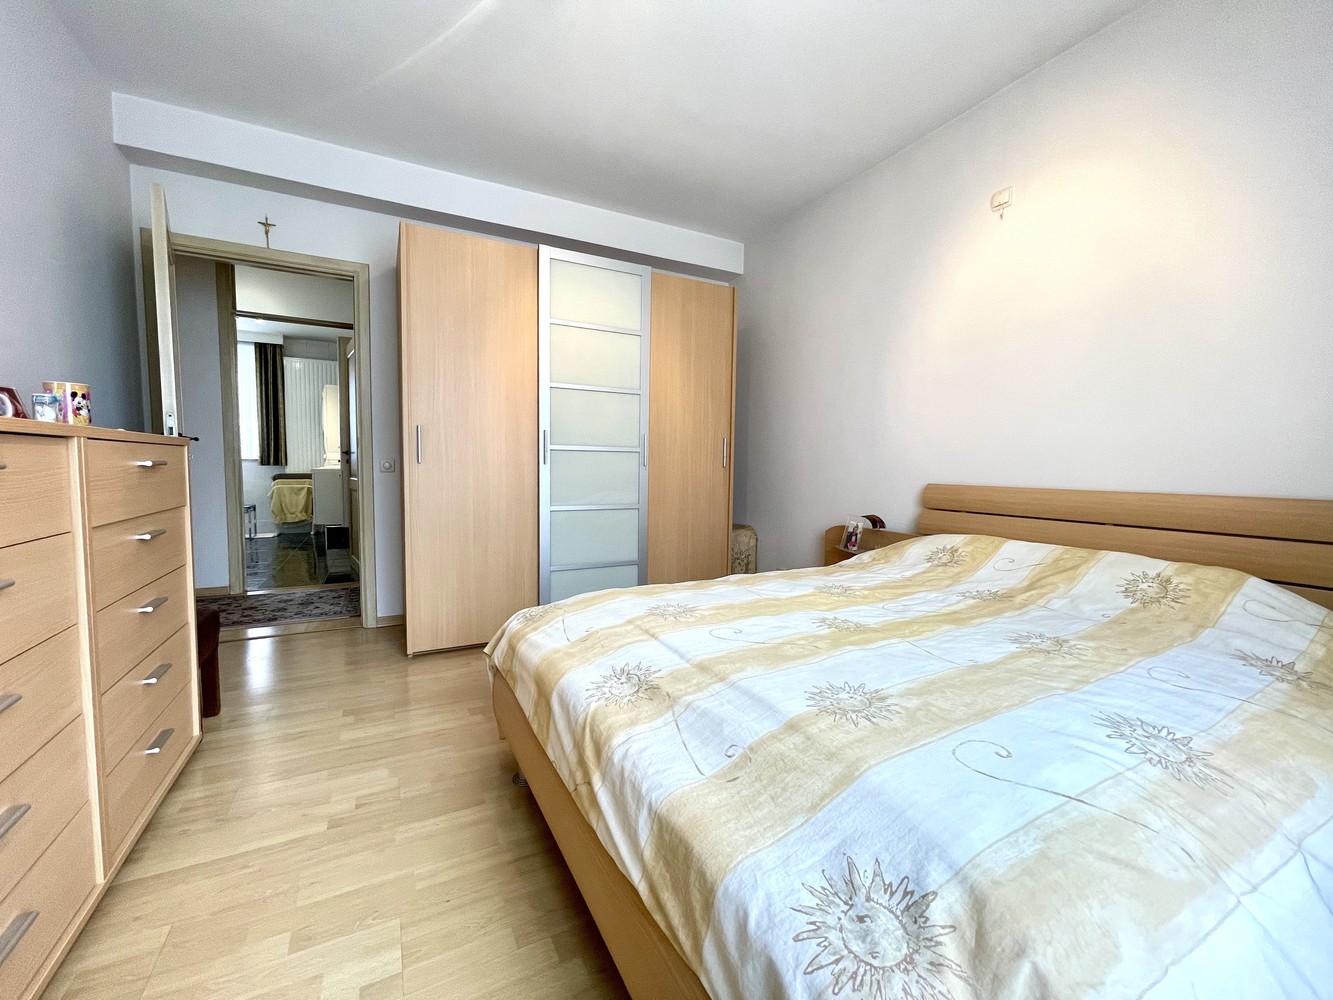 Appartement met 4 slaapkamers aan de kleine ring in Hasselt foto 18